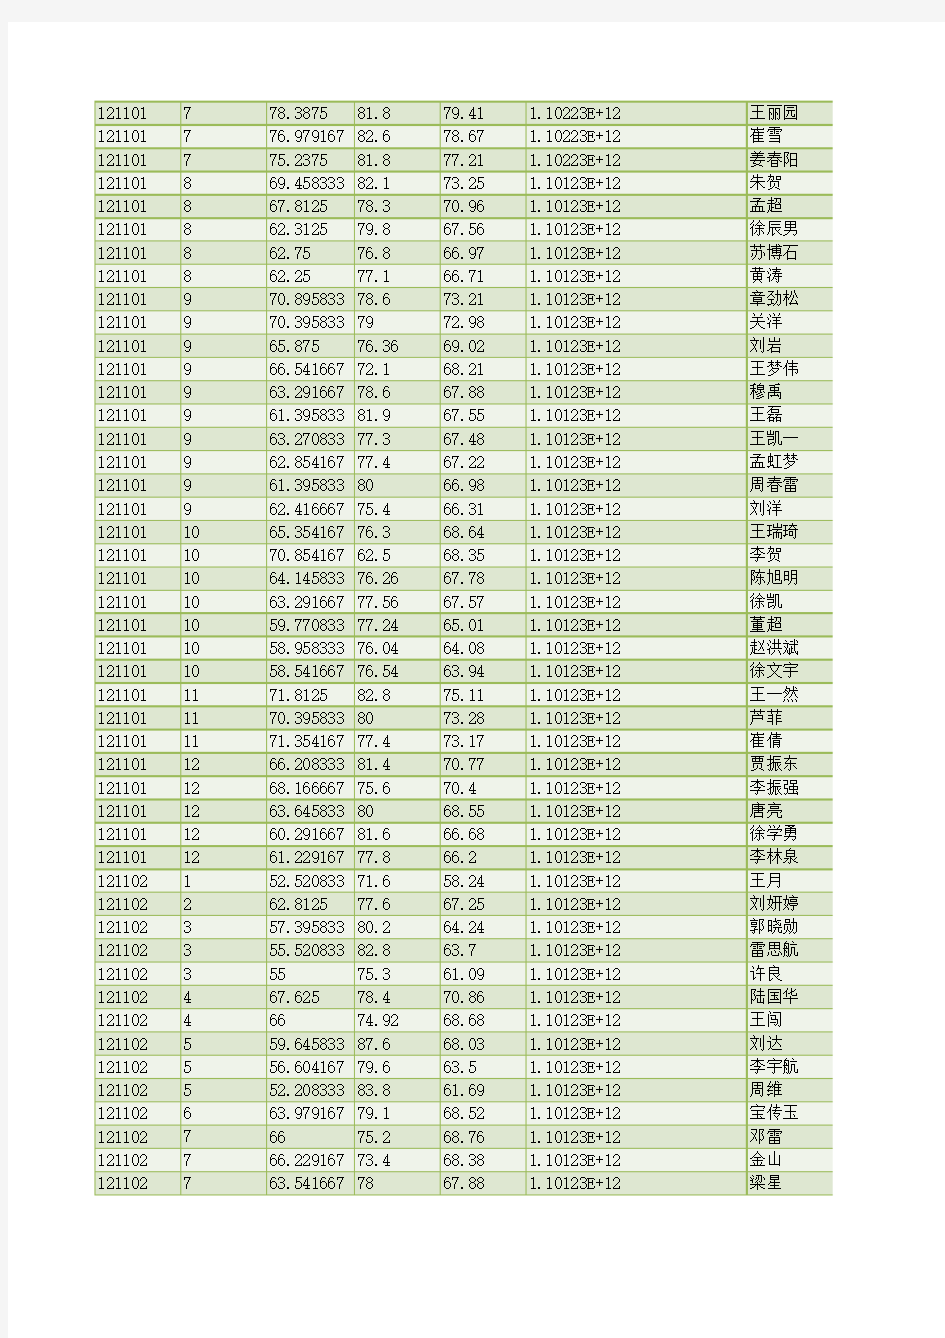 2012黑龙江政法干警考试笔试面试综合成绩